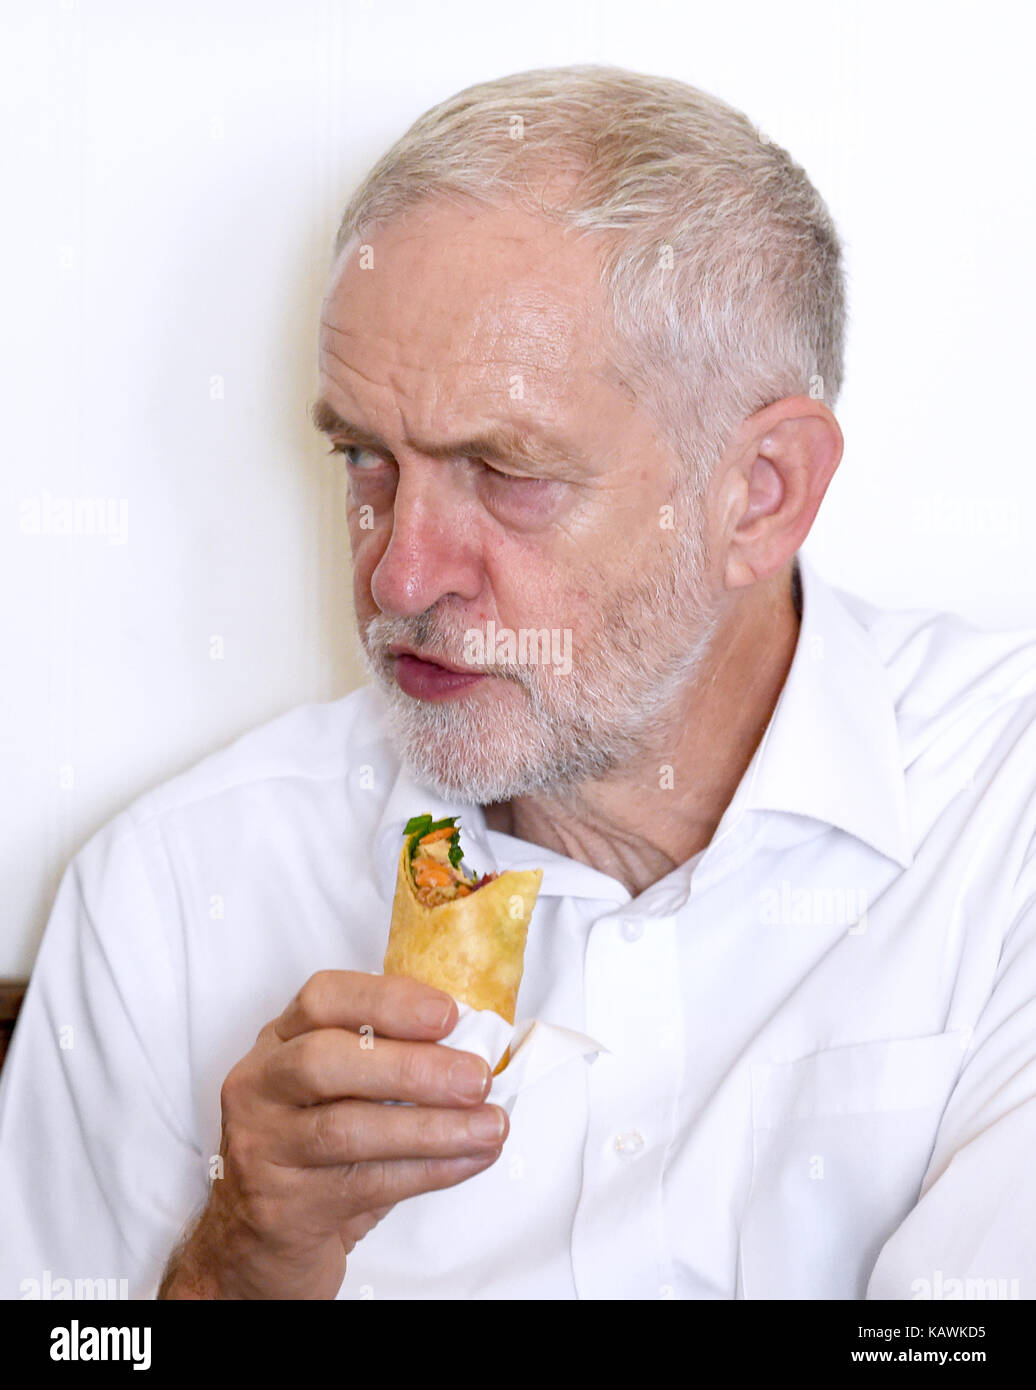 Brighton uk 23 septembre 2017 Jeremy Corbyn - le chef du parti travailliste lors d'une visite au café boulangerie à Worthing avant le début de la conférence du parti travailliste qui aura lieu à Brighton au cours des prochains jours photographie prise par Simon dack Banque D'Images